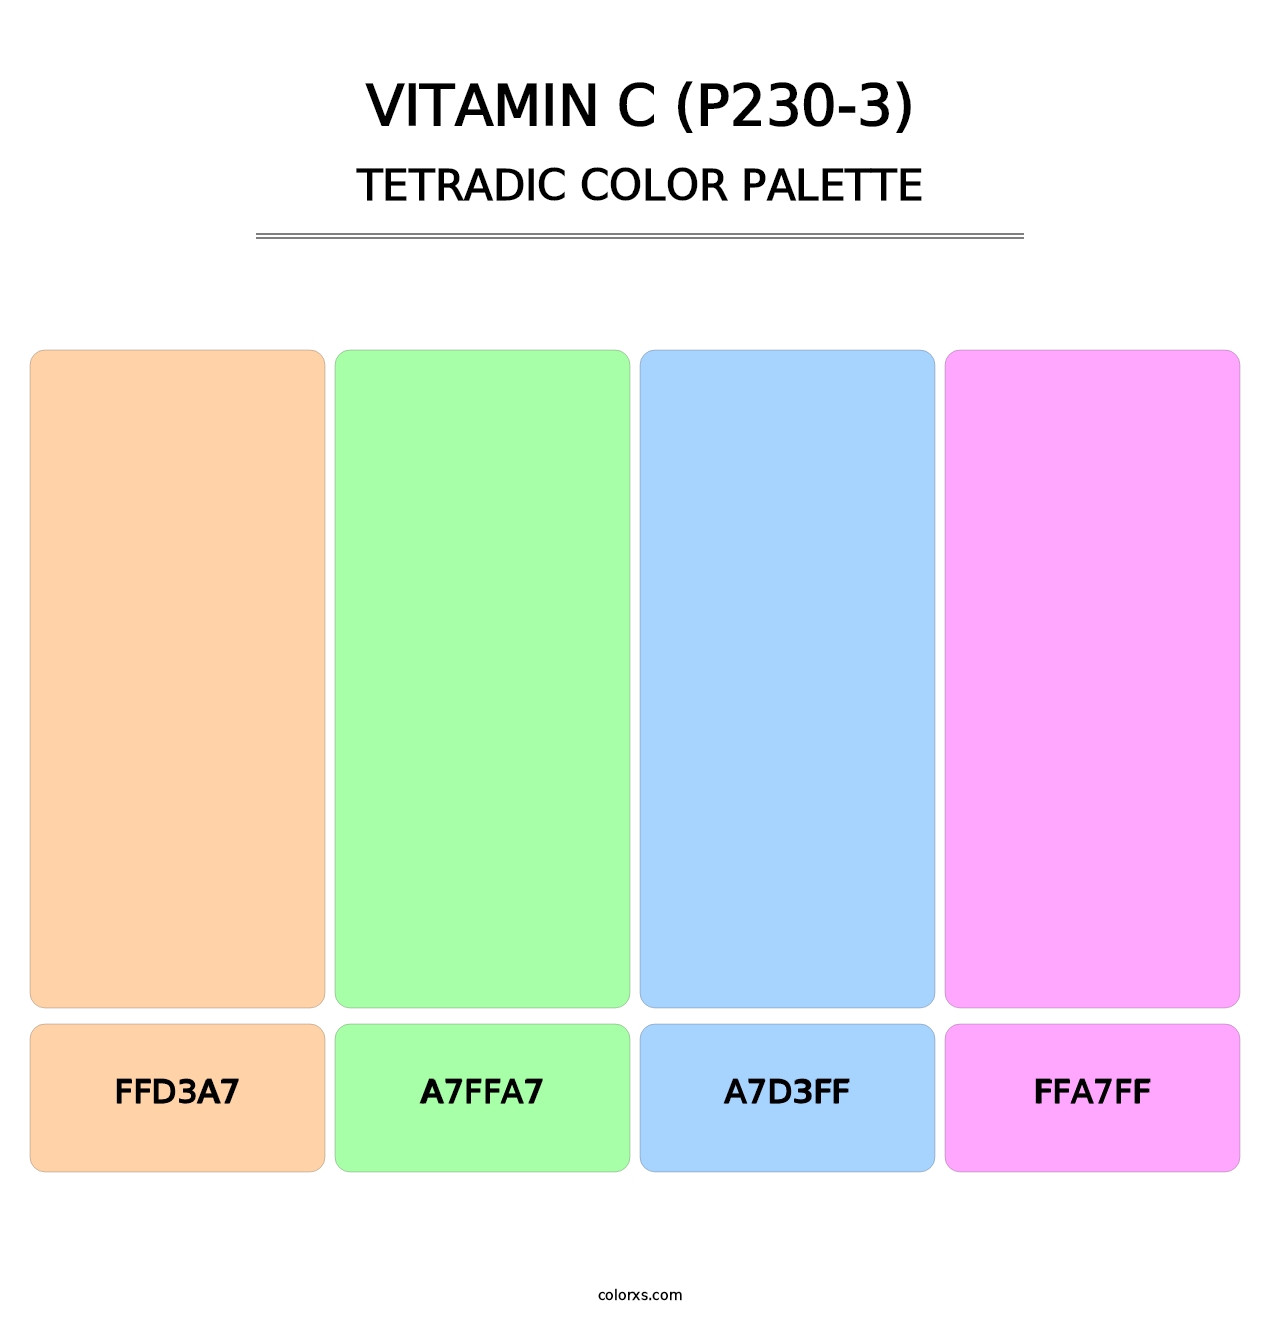 Vitamin C (P230-3) - Tetradic Color Palette